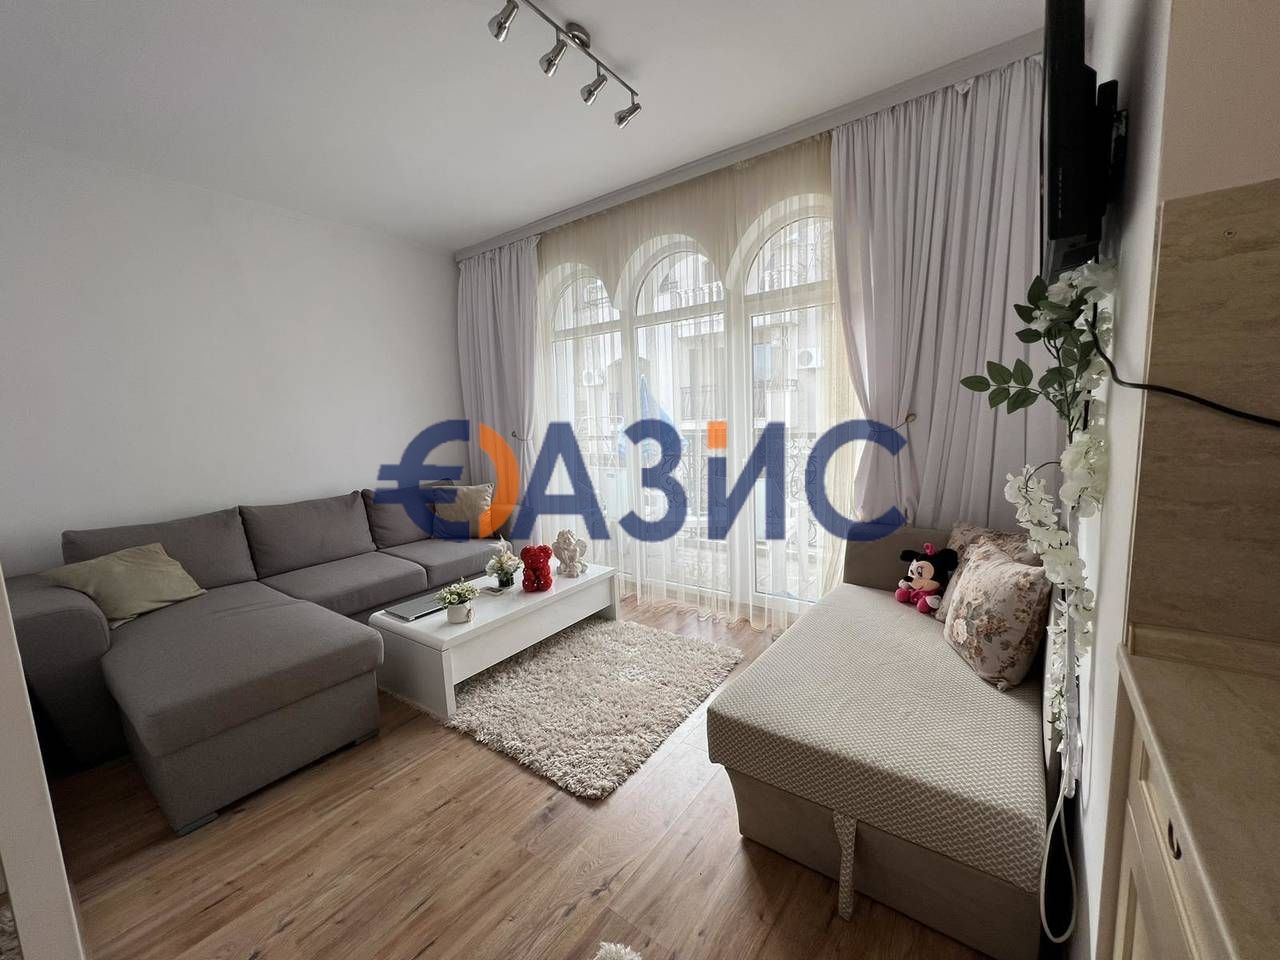 Apartment at Sunny Beach, Bulgaria, 32 sq.m - picture 1